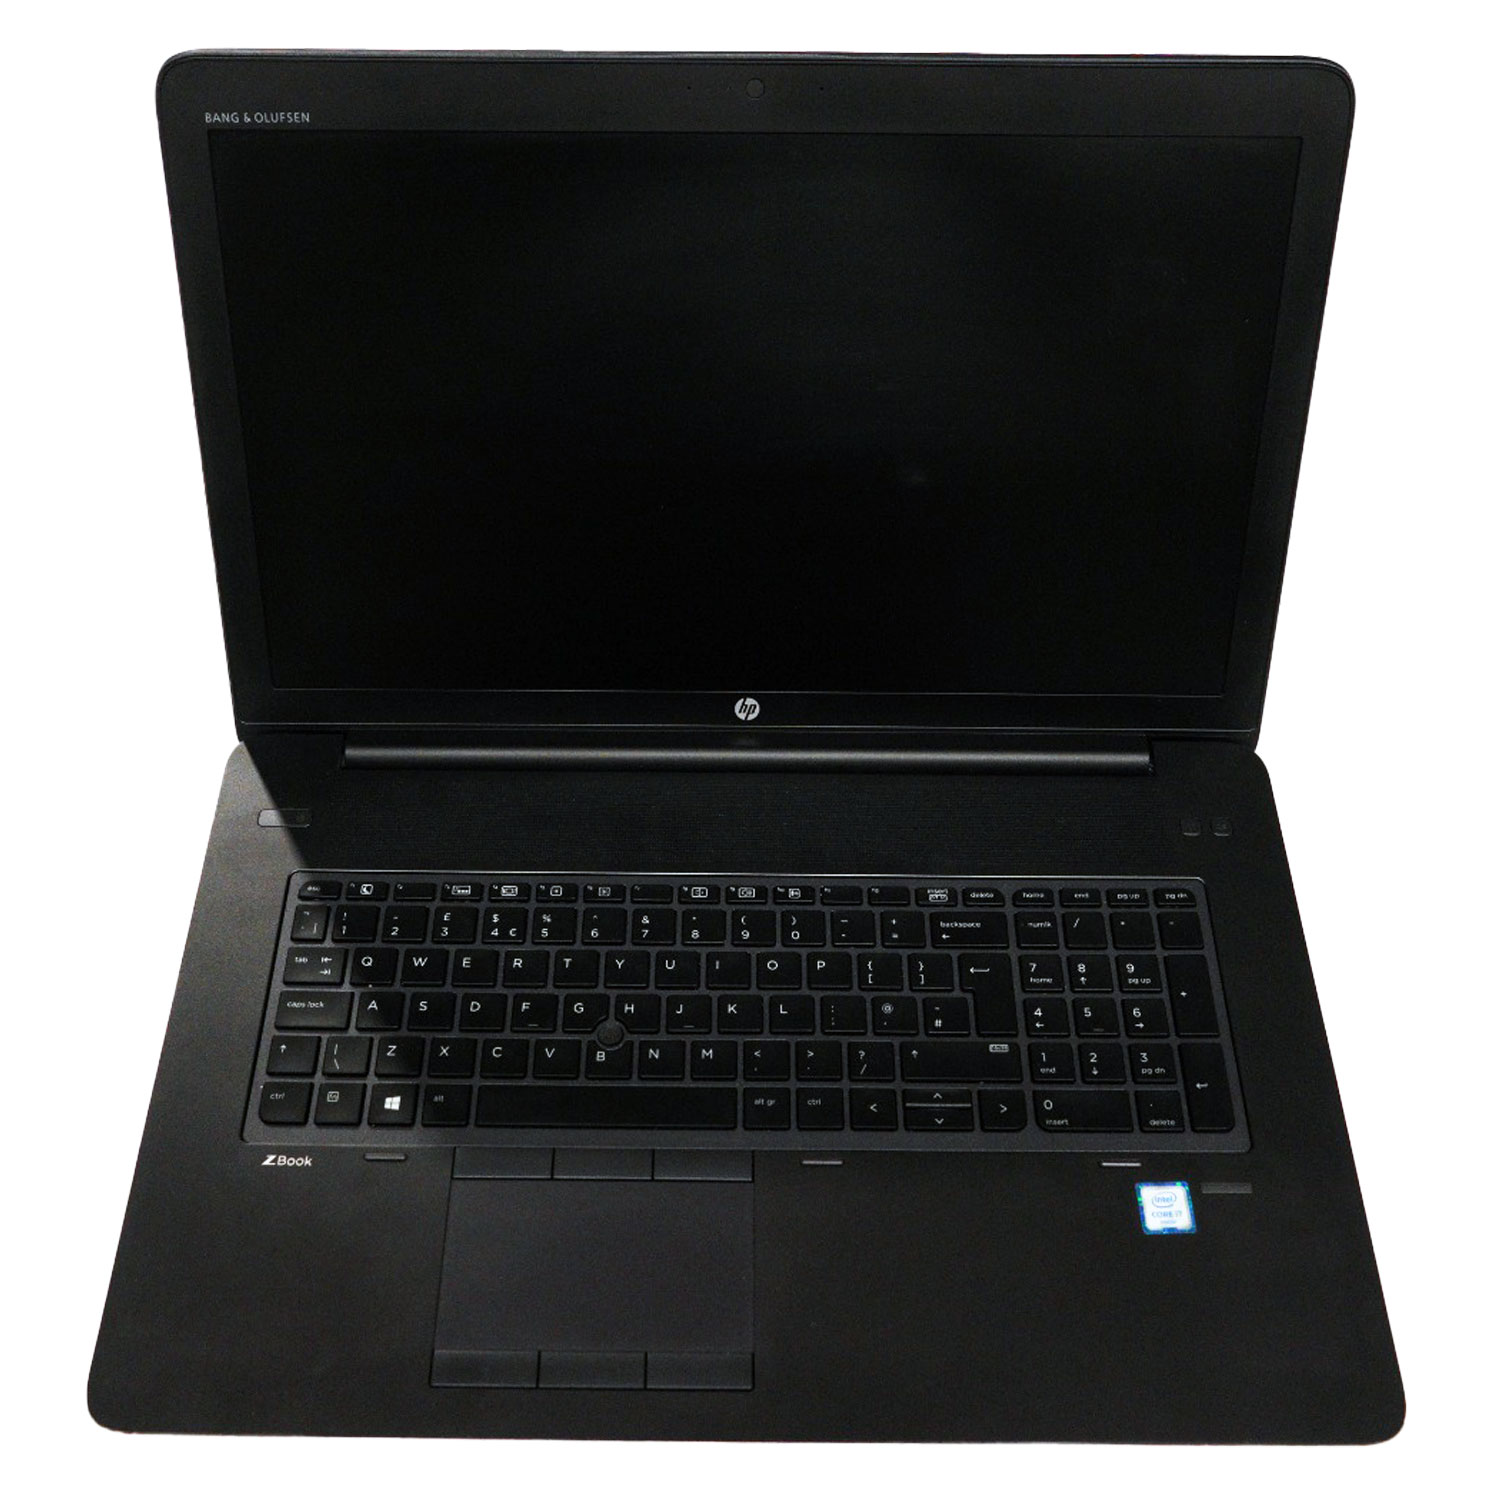 HP Zbook 17 g3 Workstation Laptop